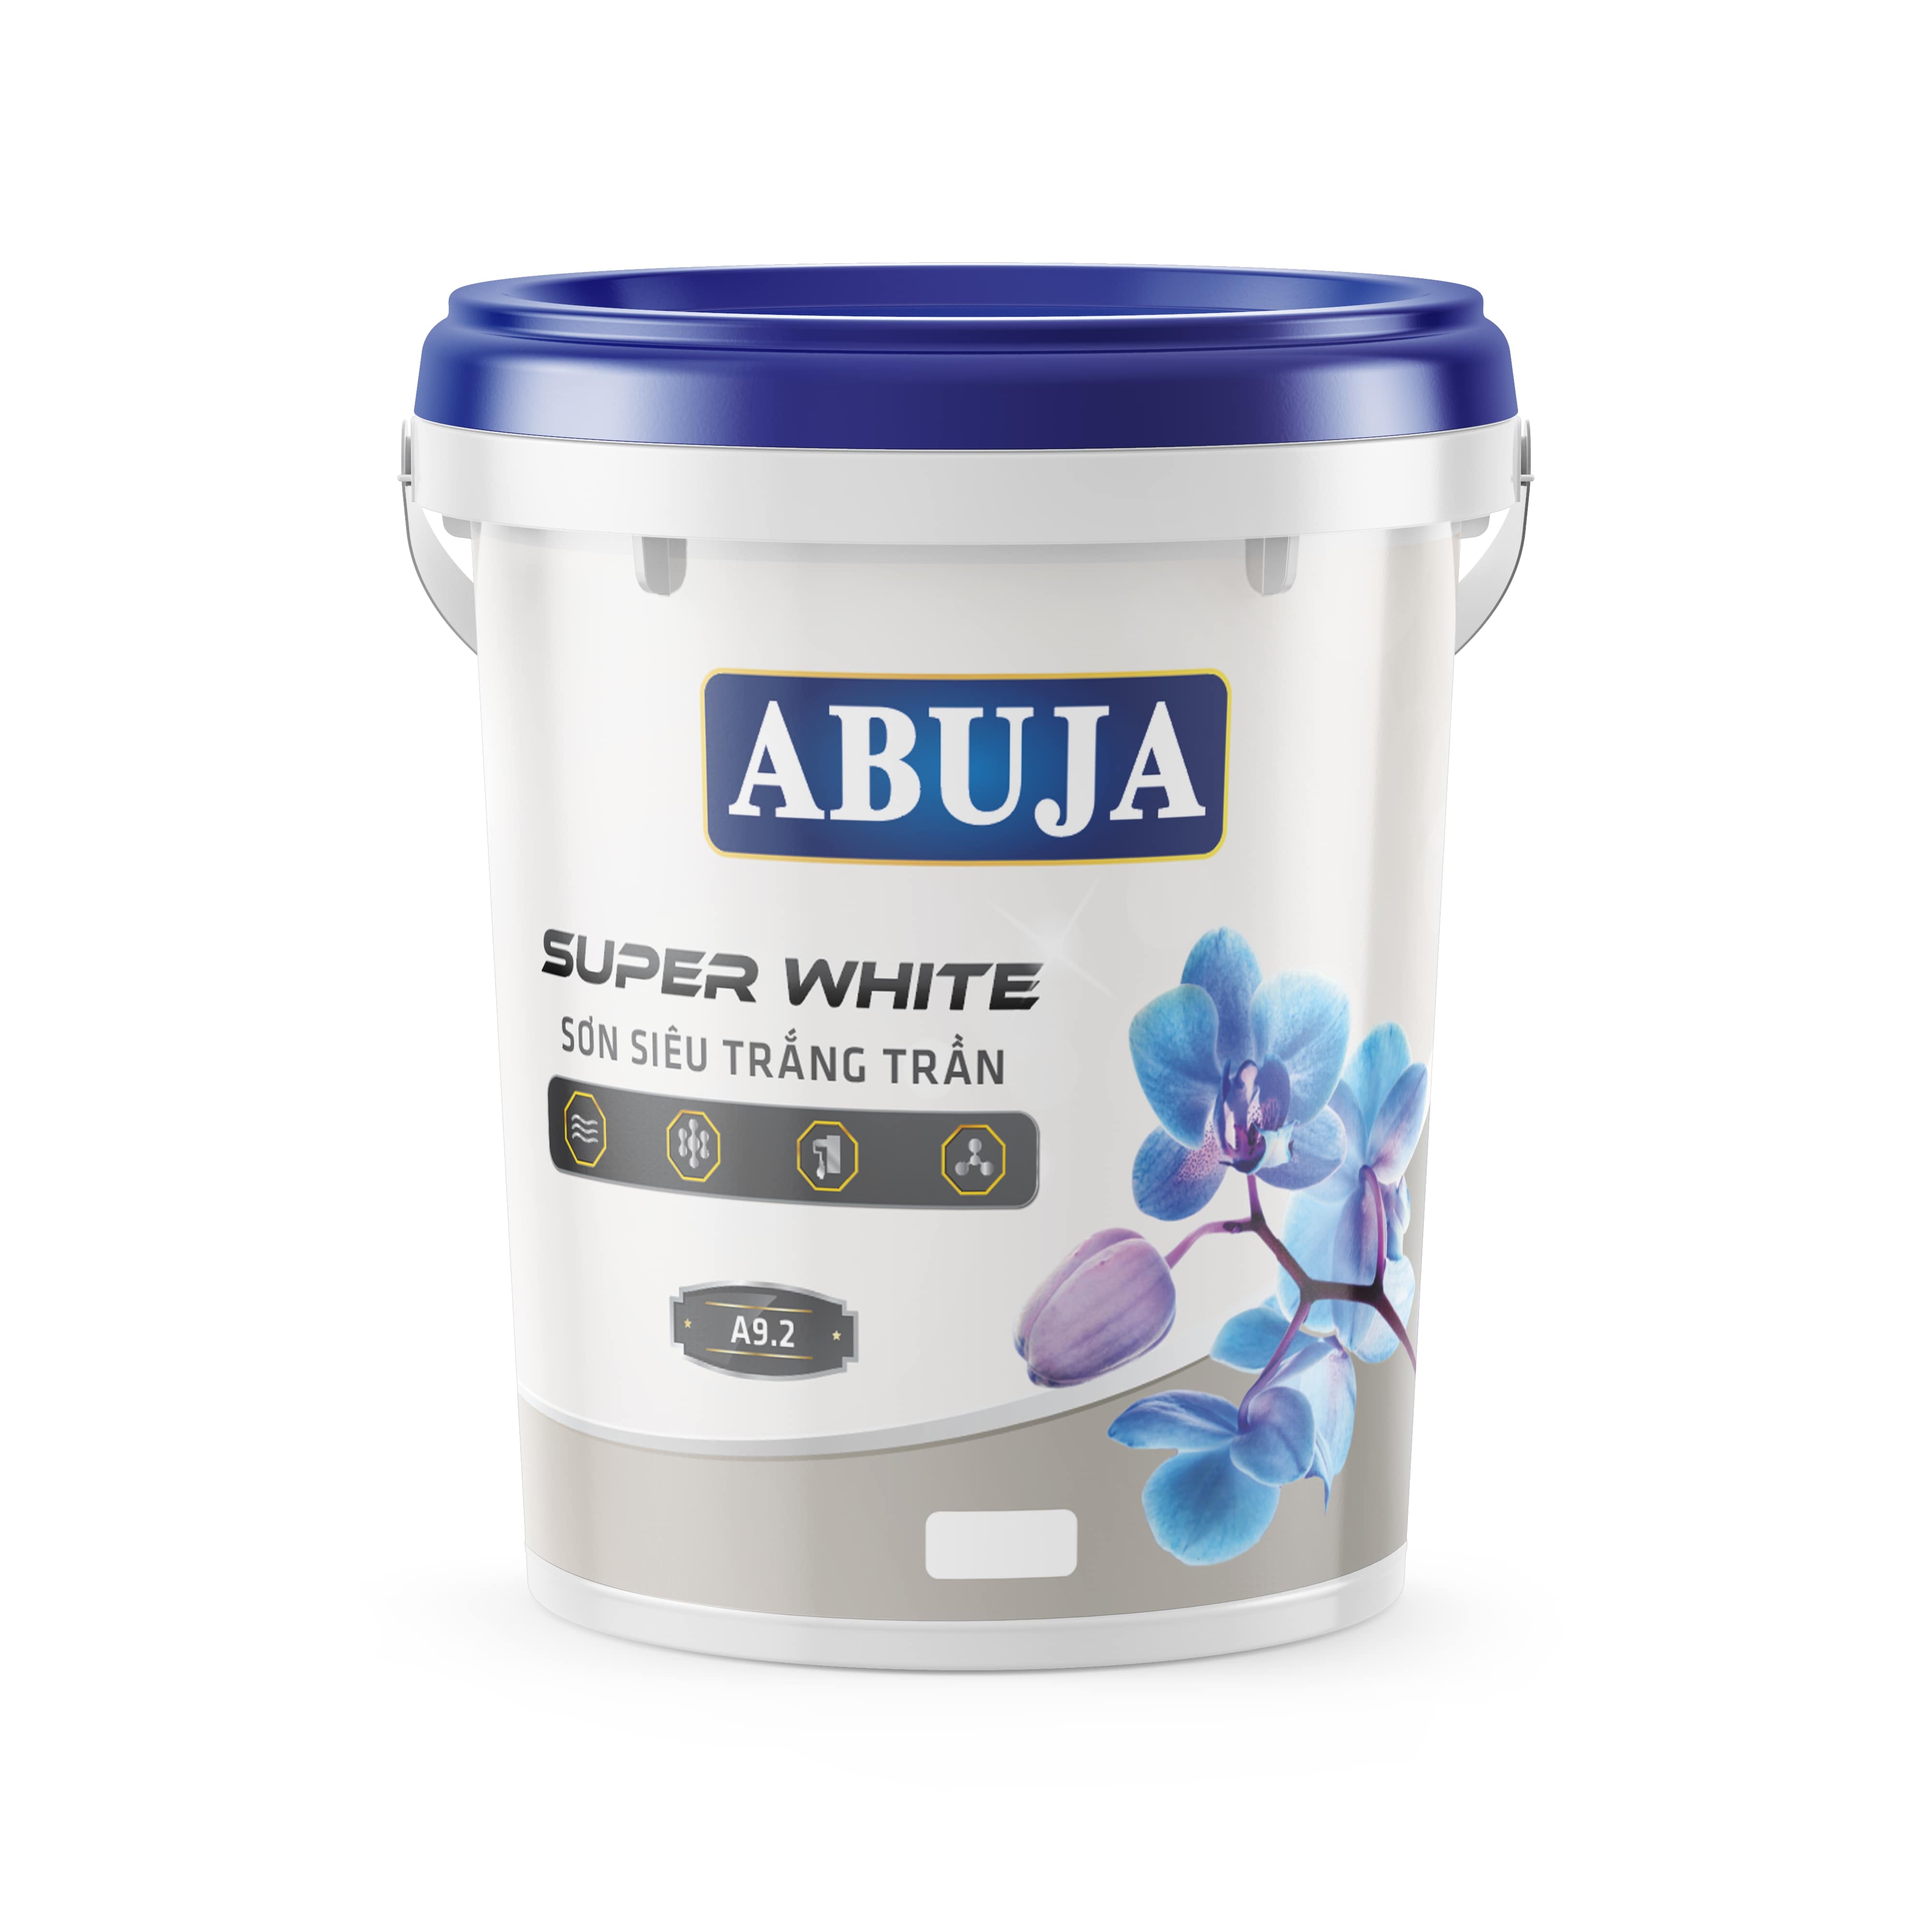 ABUJA SUPER WHITE: Sơn siêu trắng trần A9.2 - 22KG